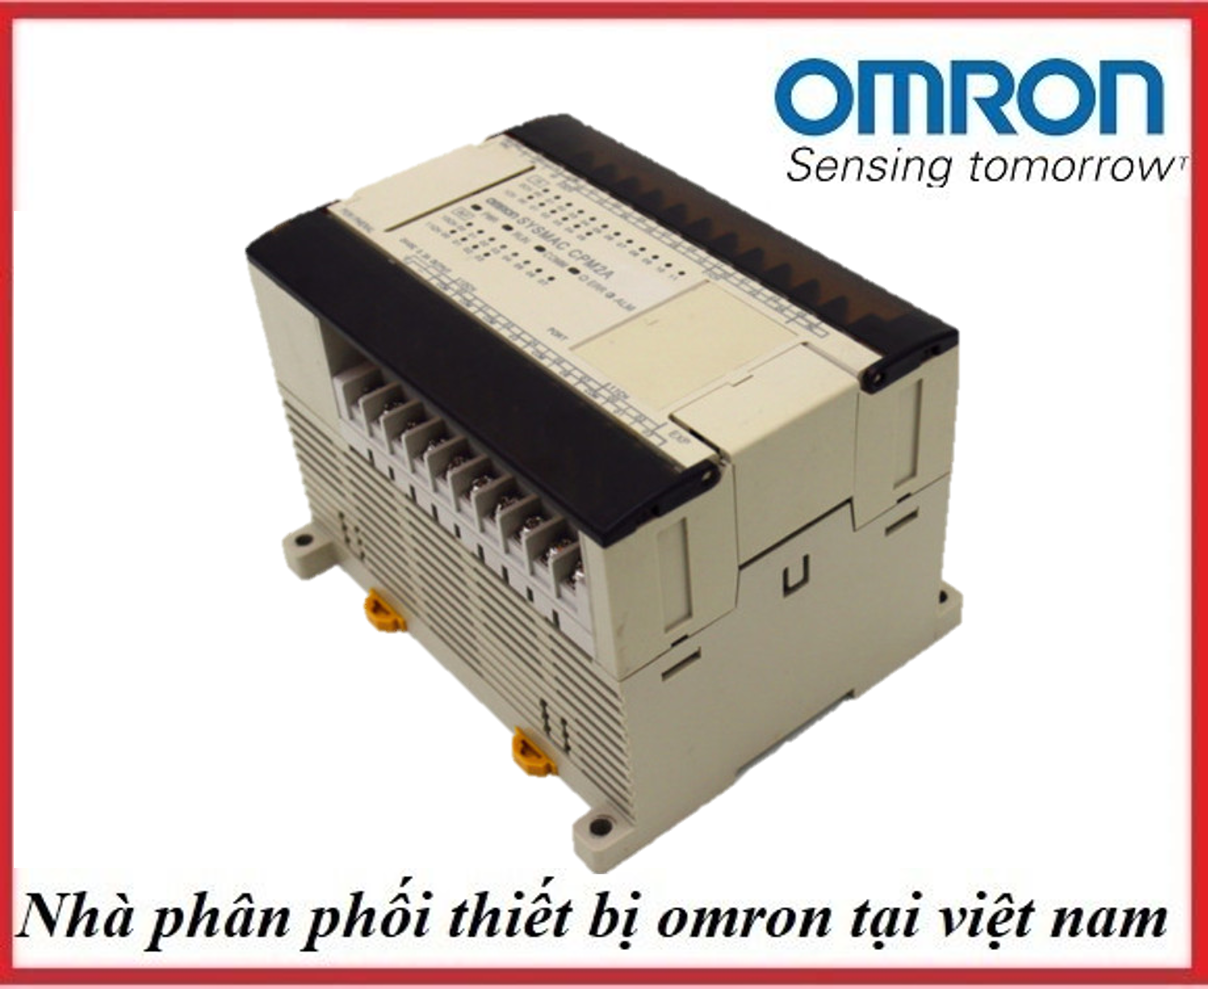 新品 OMRON オムロン C200HS-CPU31-E プログラマブルコントローラ 保証 - 2